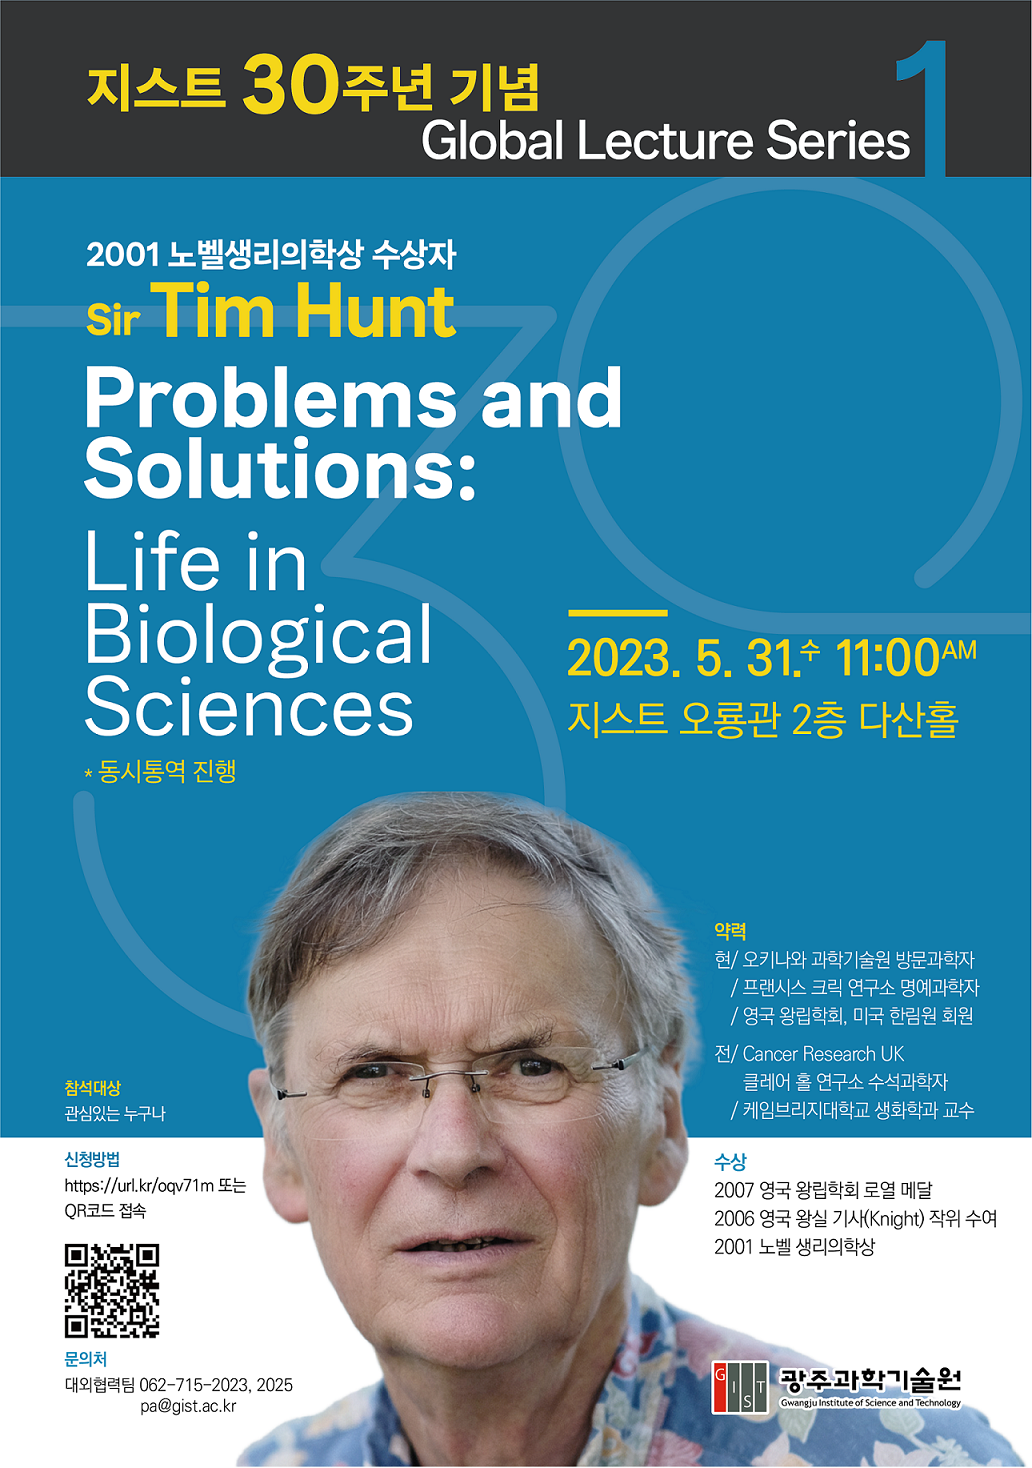 [대외협력팀] 지스트 30주년 기념 Global Lecture Series 1 - 노벨생리의학상 수상자 Tim Hunt (23.5.31.(수) 11:00, 오룡관 2층 다산홀) 이미지